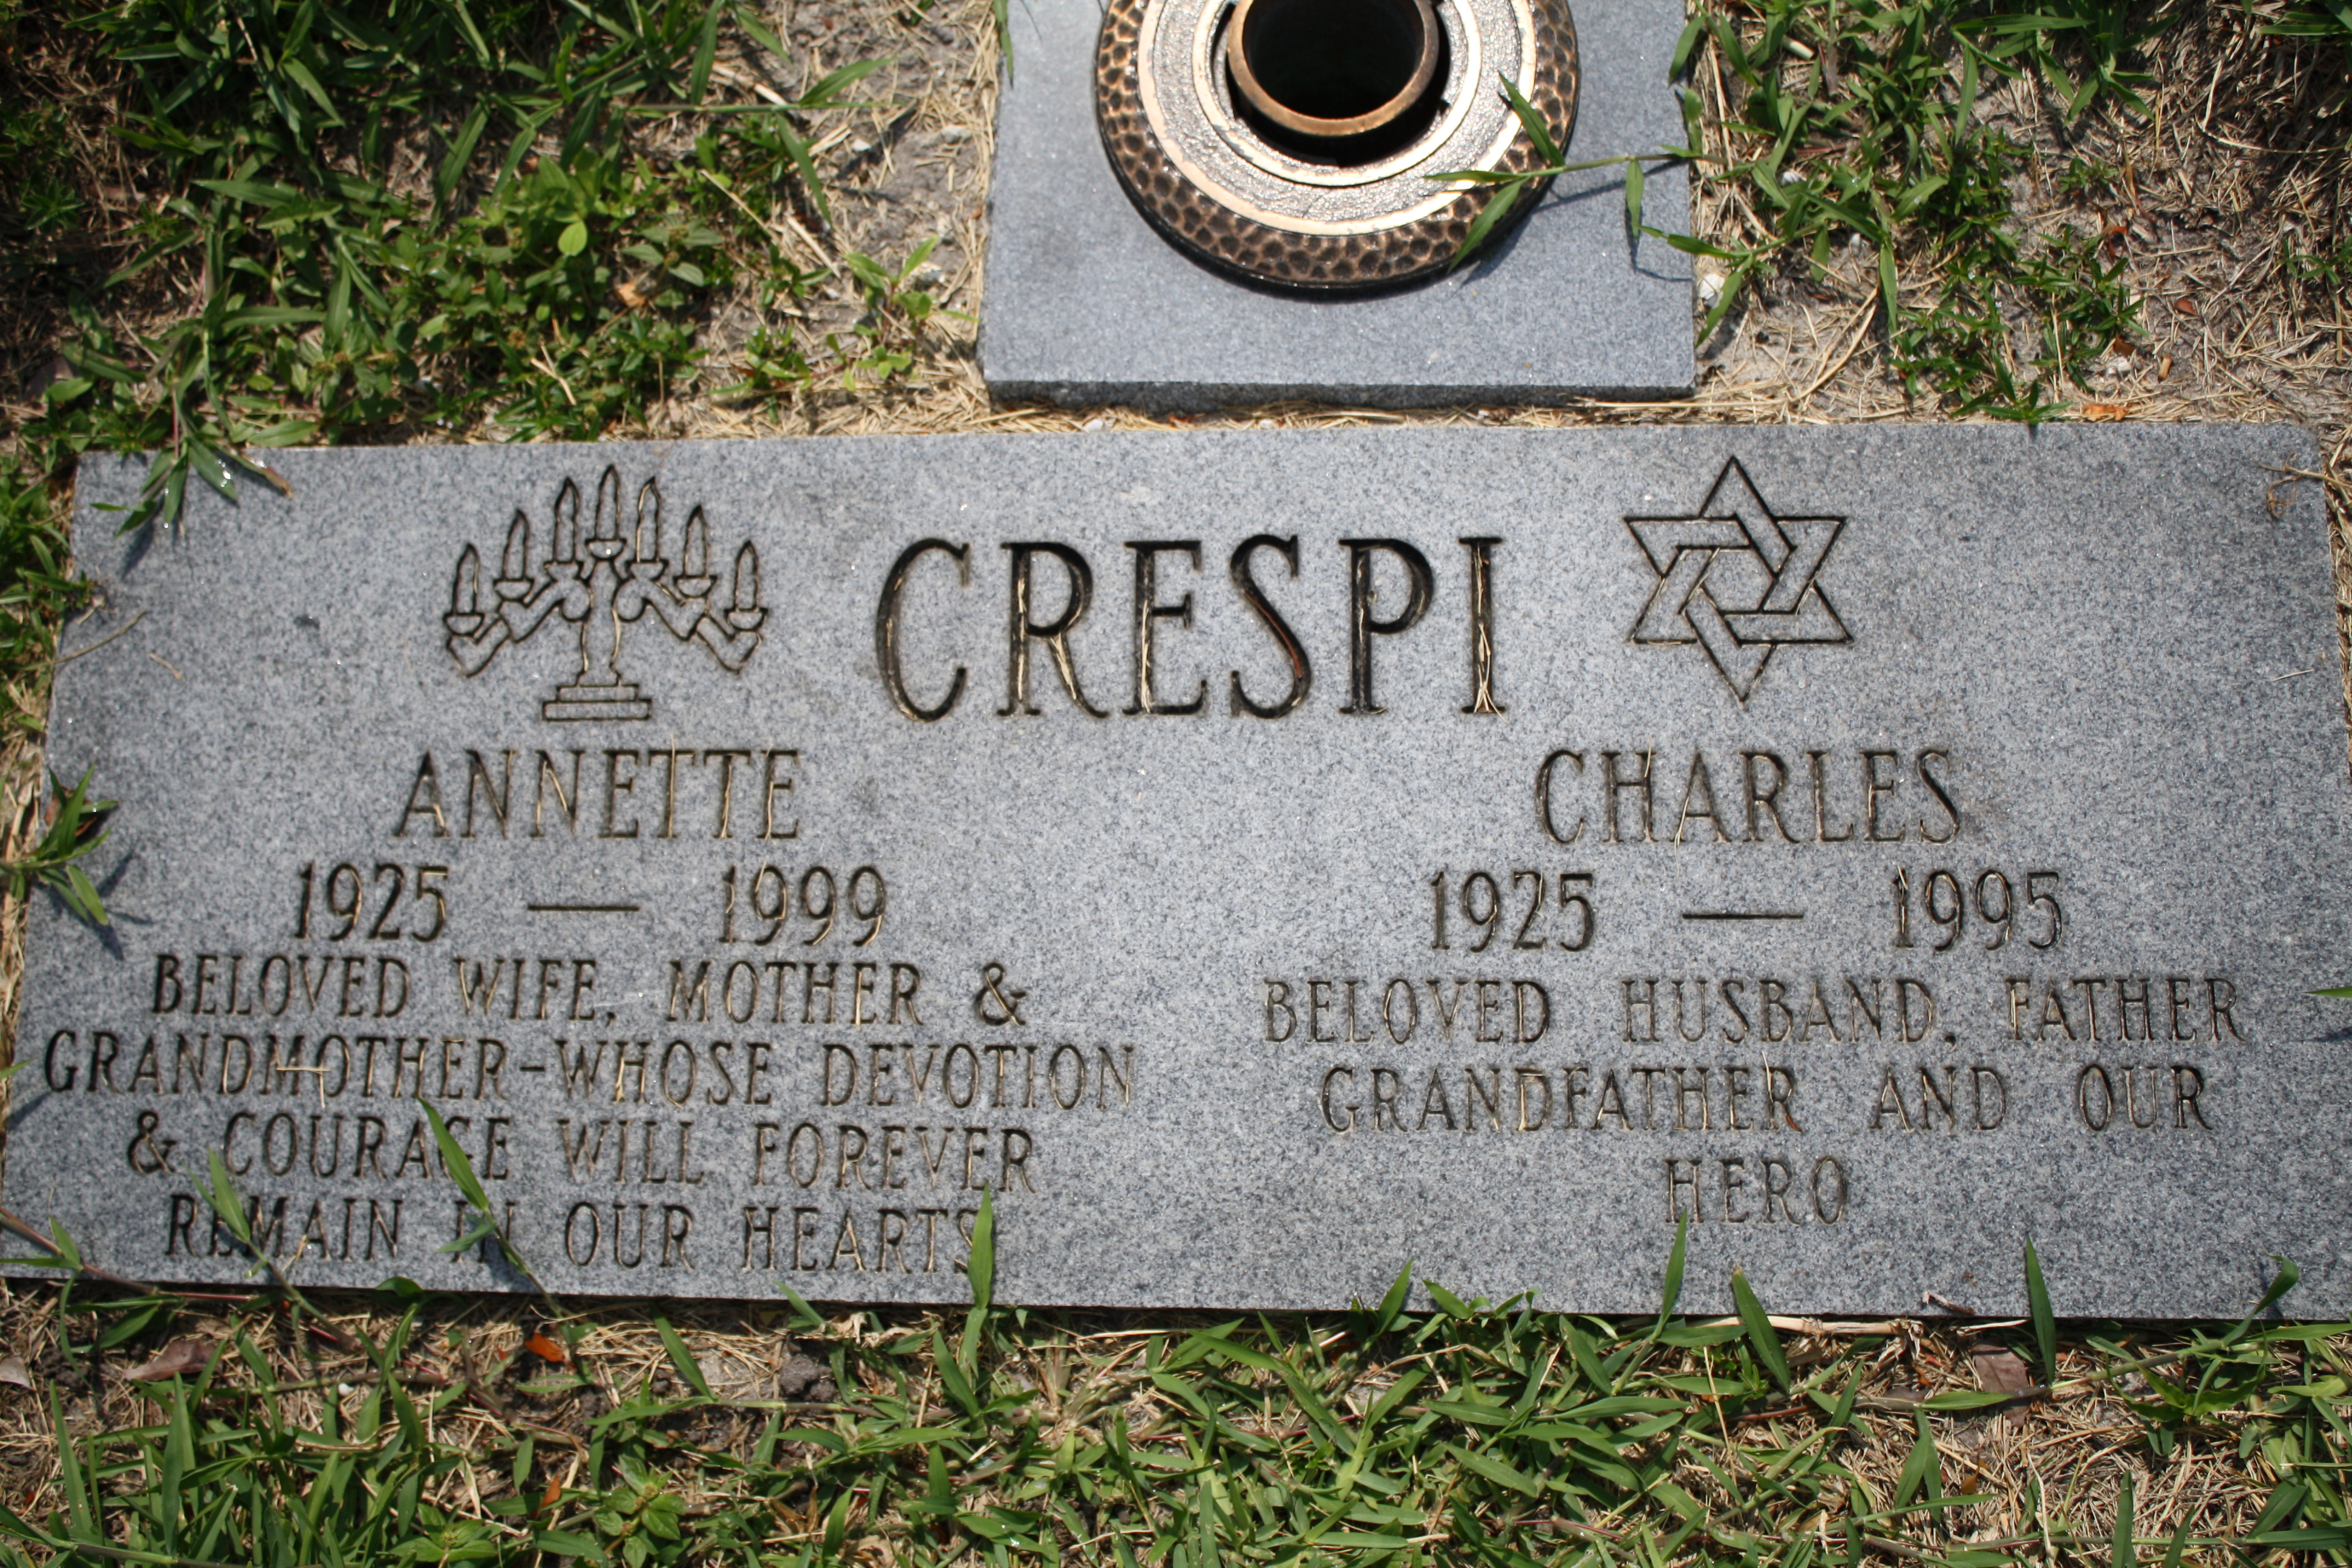 Charles Crespi